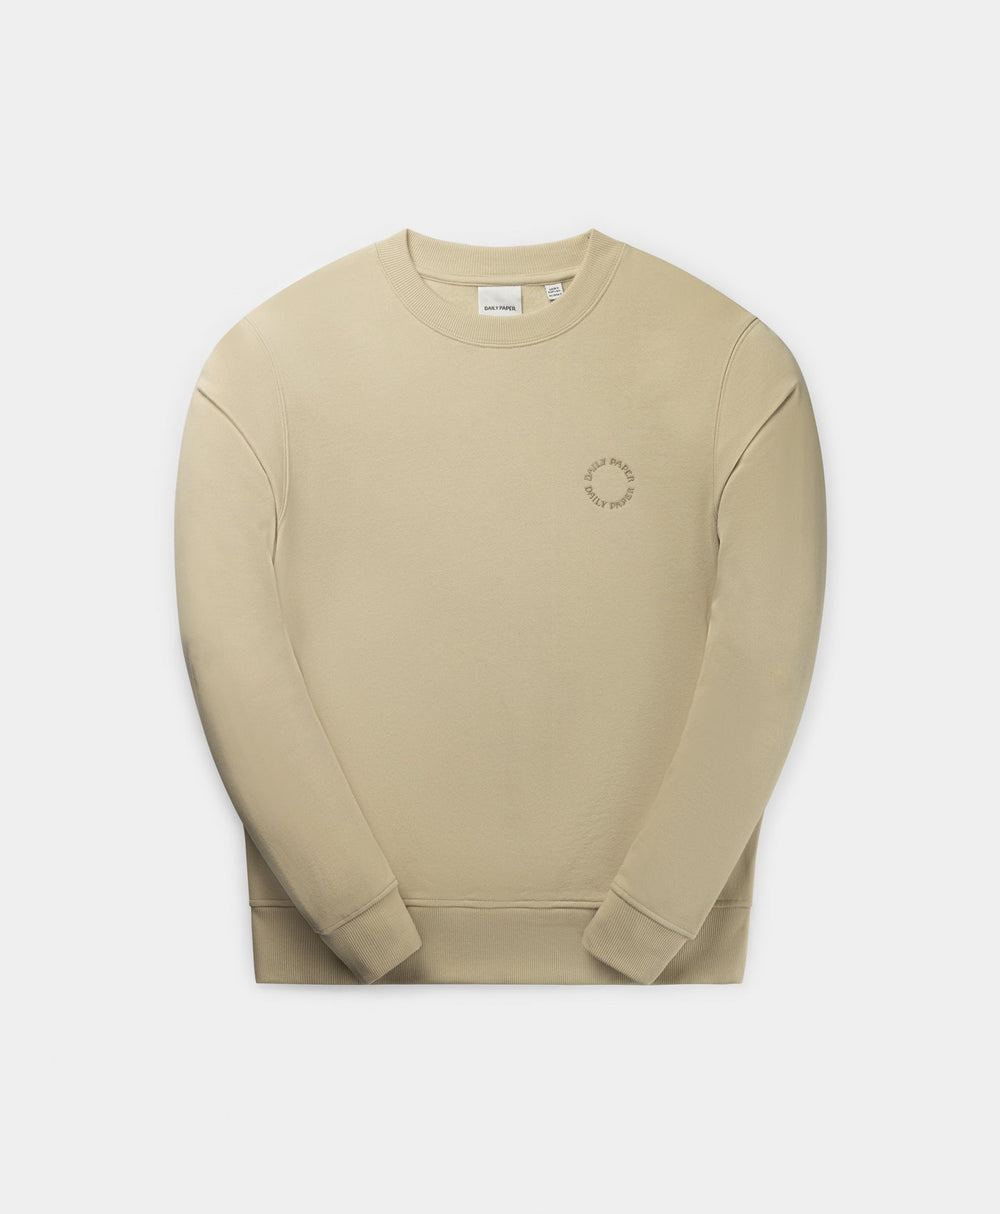 DP - Pelican Beige Orbit Emb Sweater - Packshot - front 